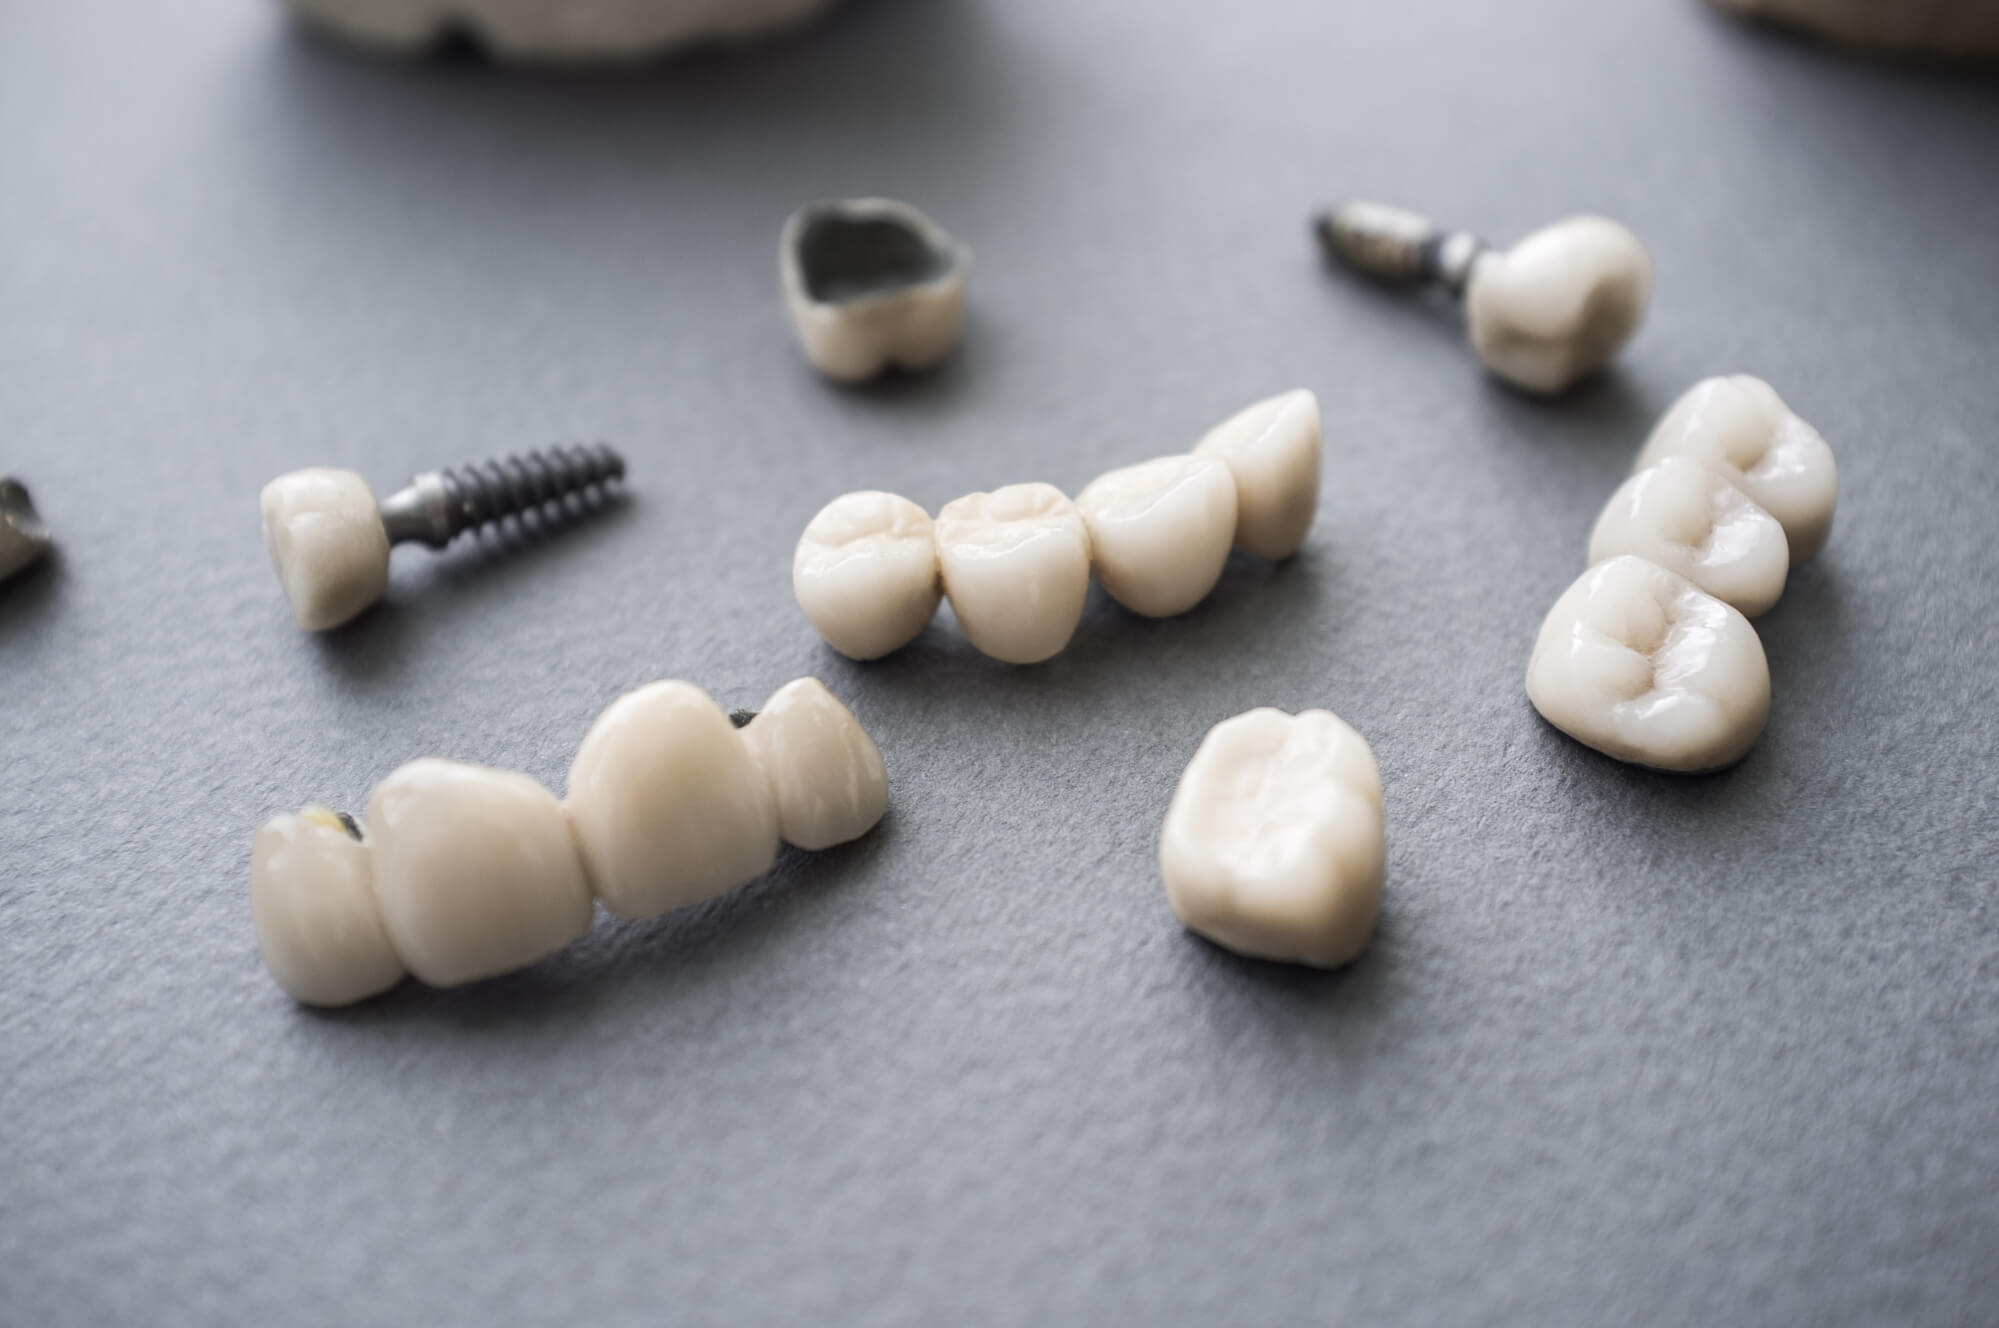 dental crown in Wilson and dental implants